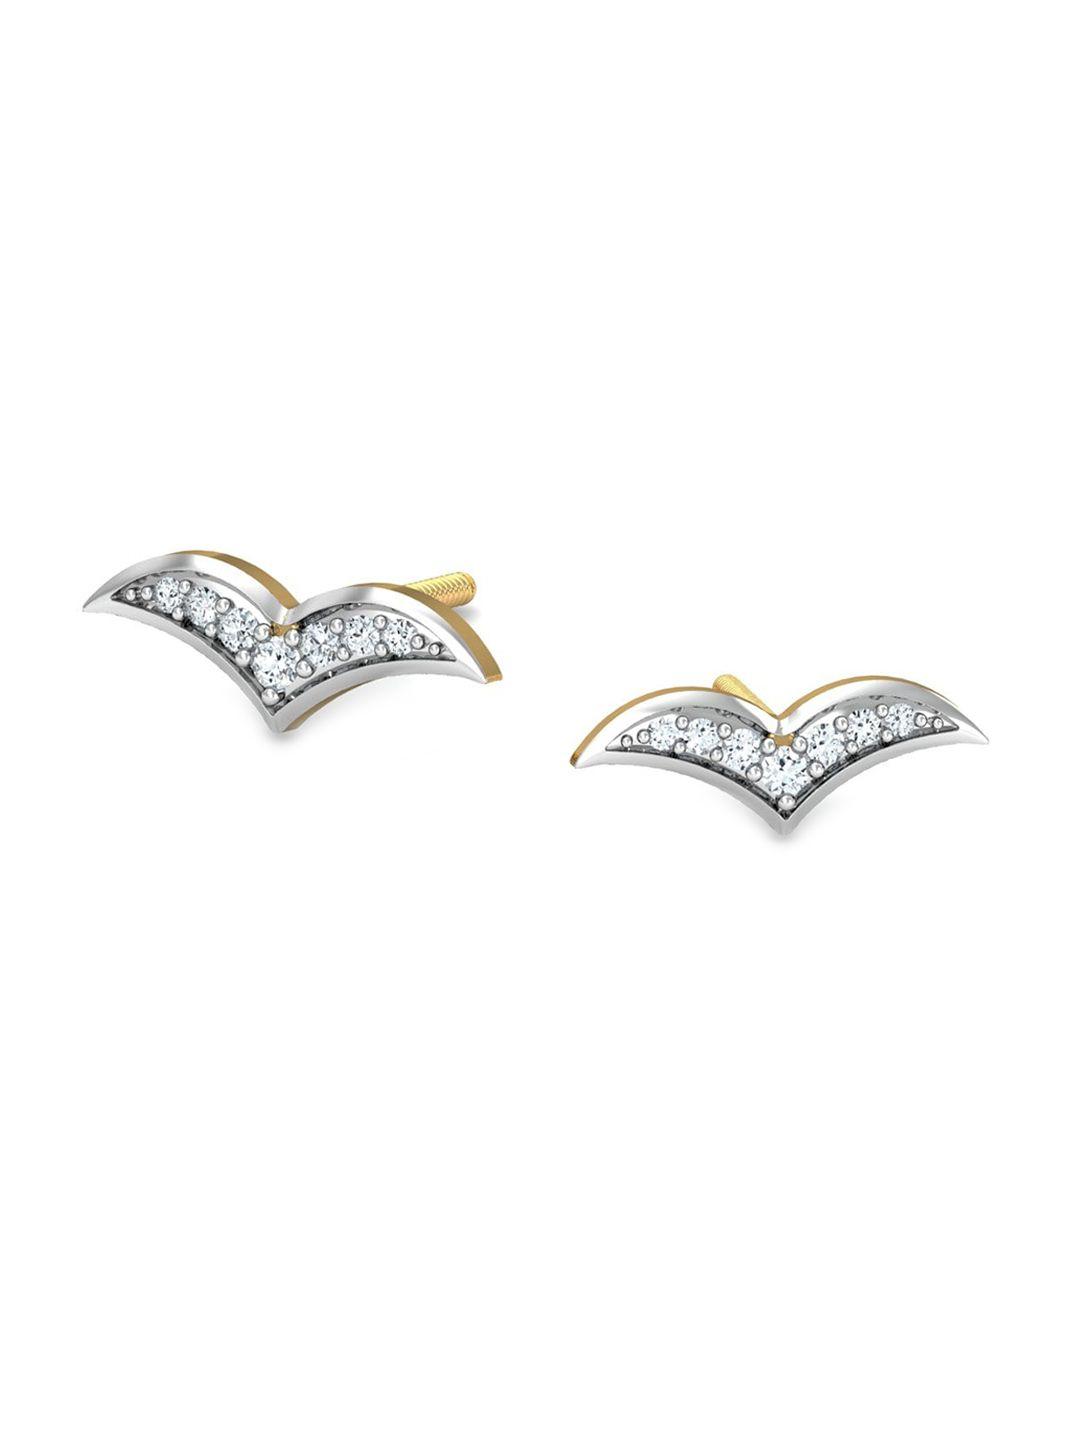 kuberbox-flying-bird-18kt-gold-diamond-studded-earrings--0.89gm